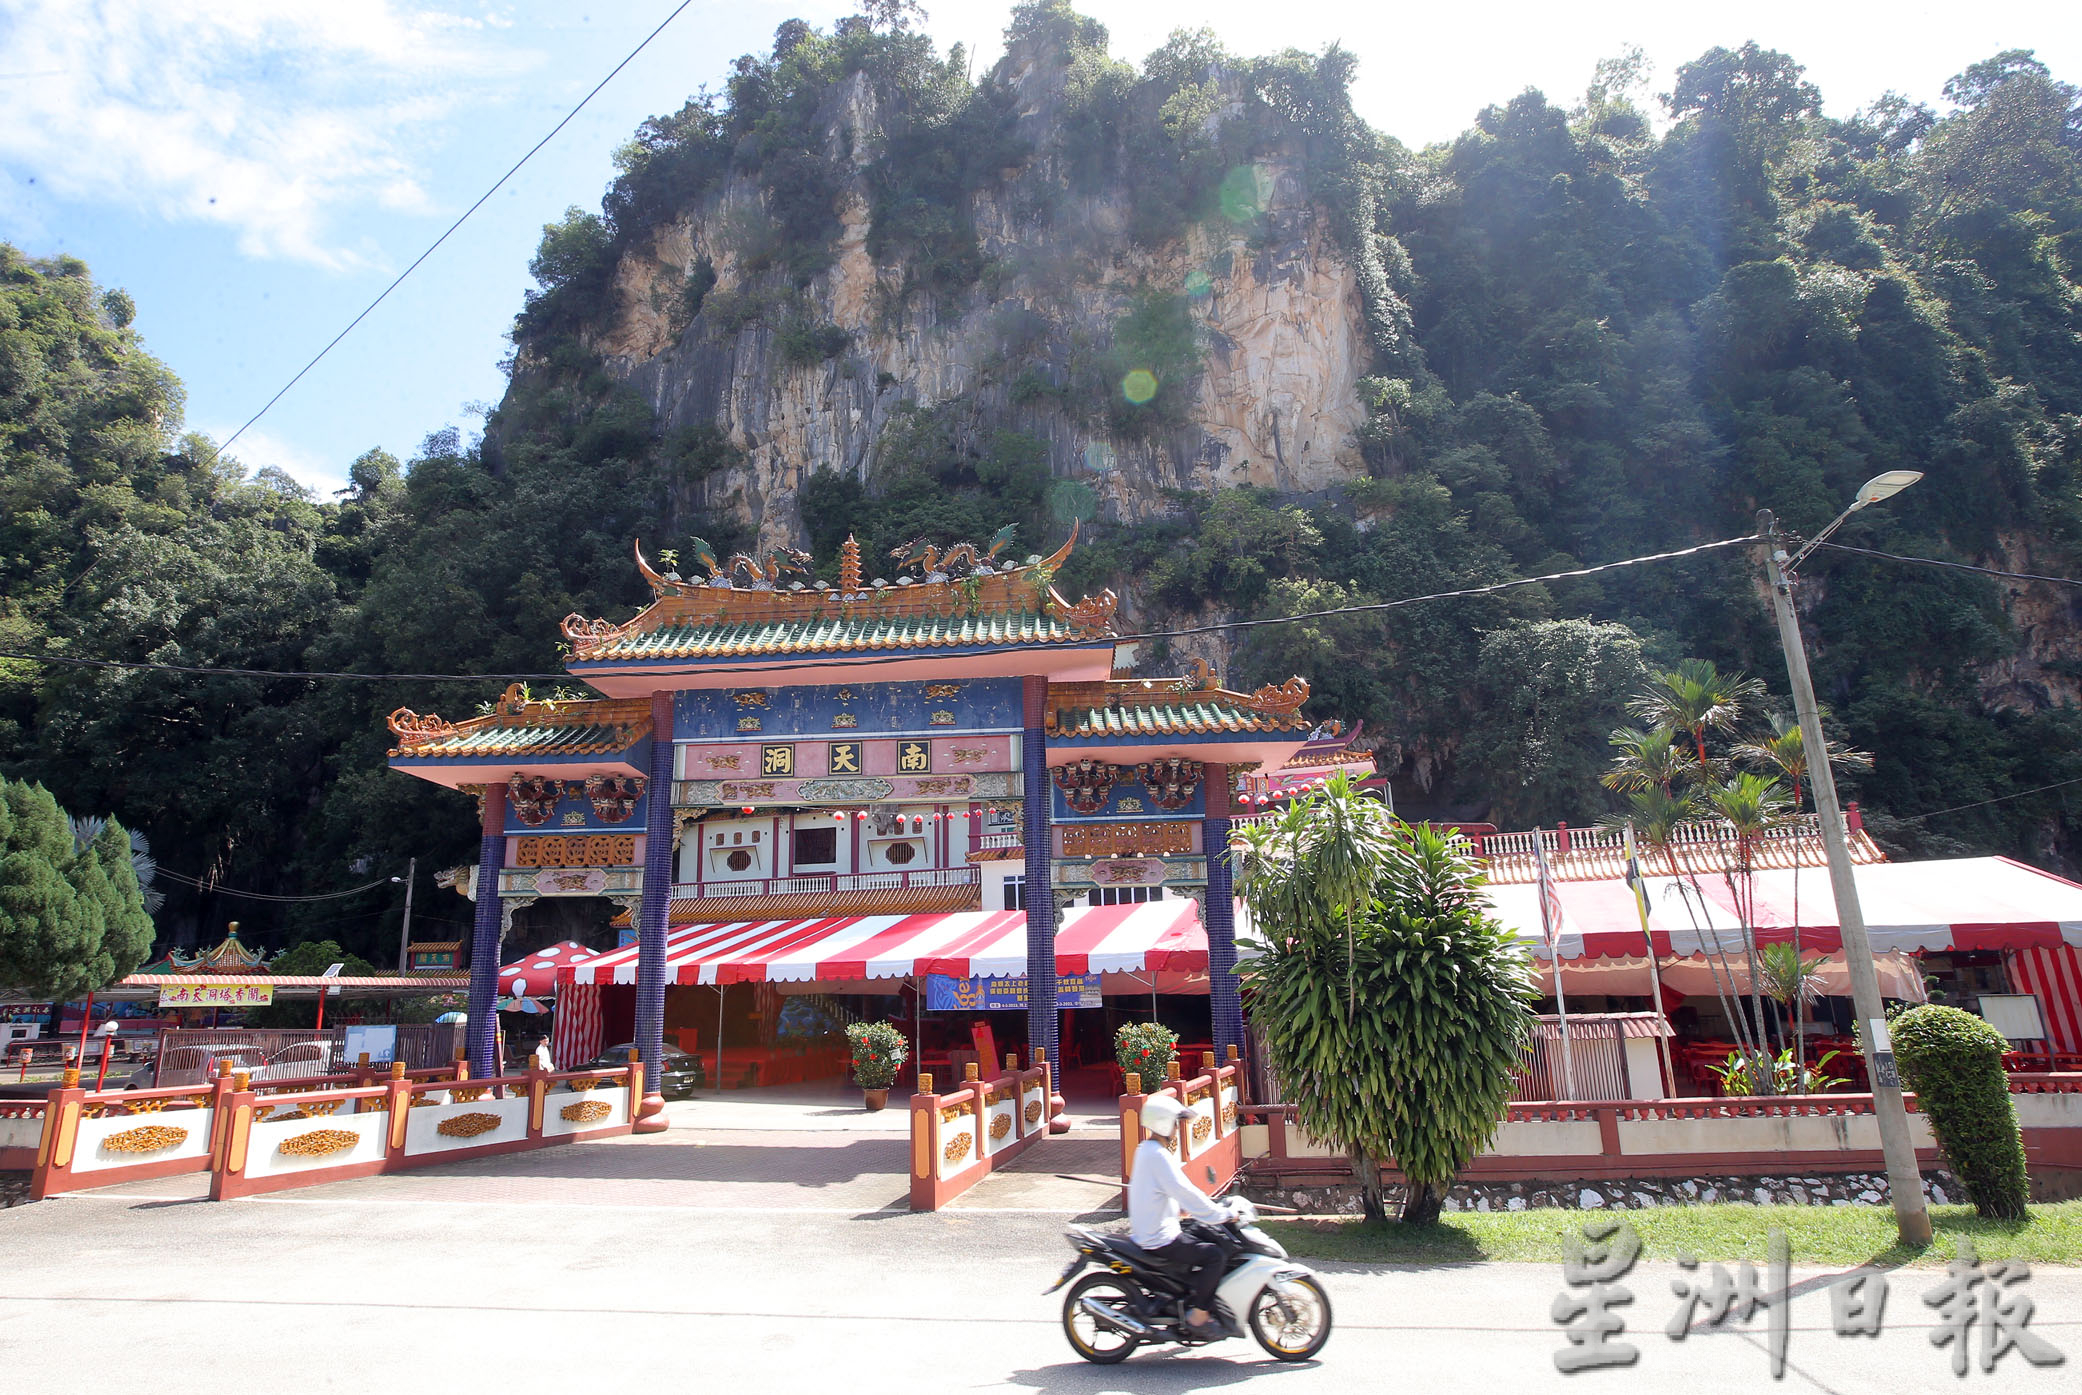 霹行政议会已通过 合法化怡14洞穴庙宇为宗教保留地